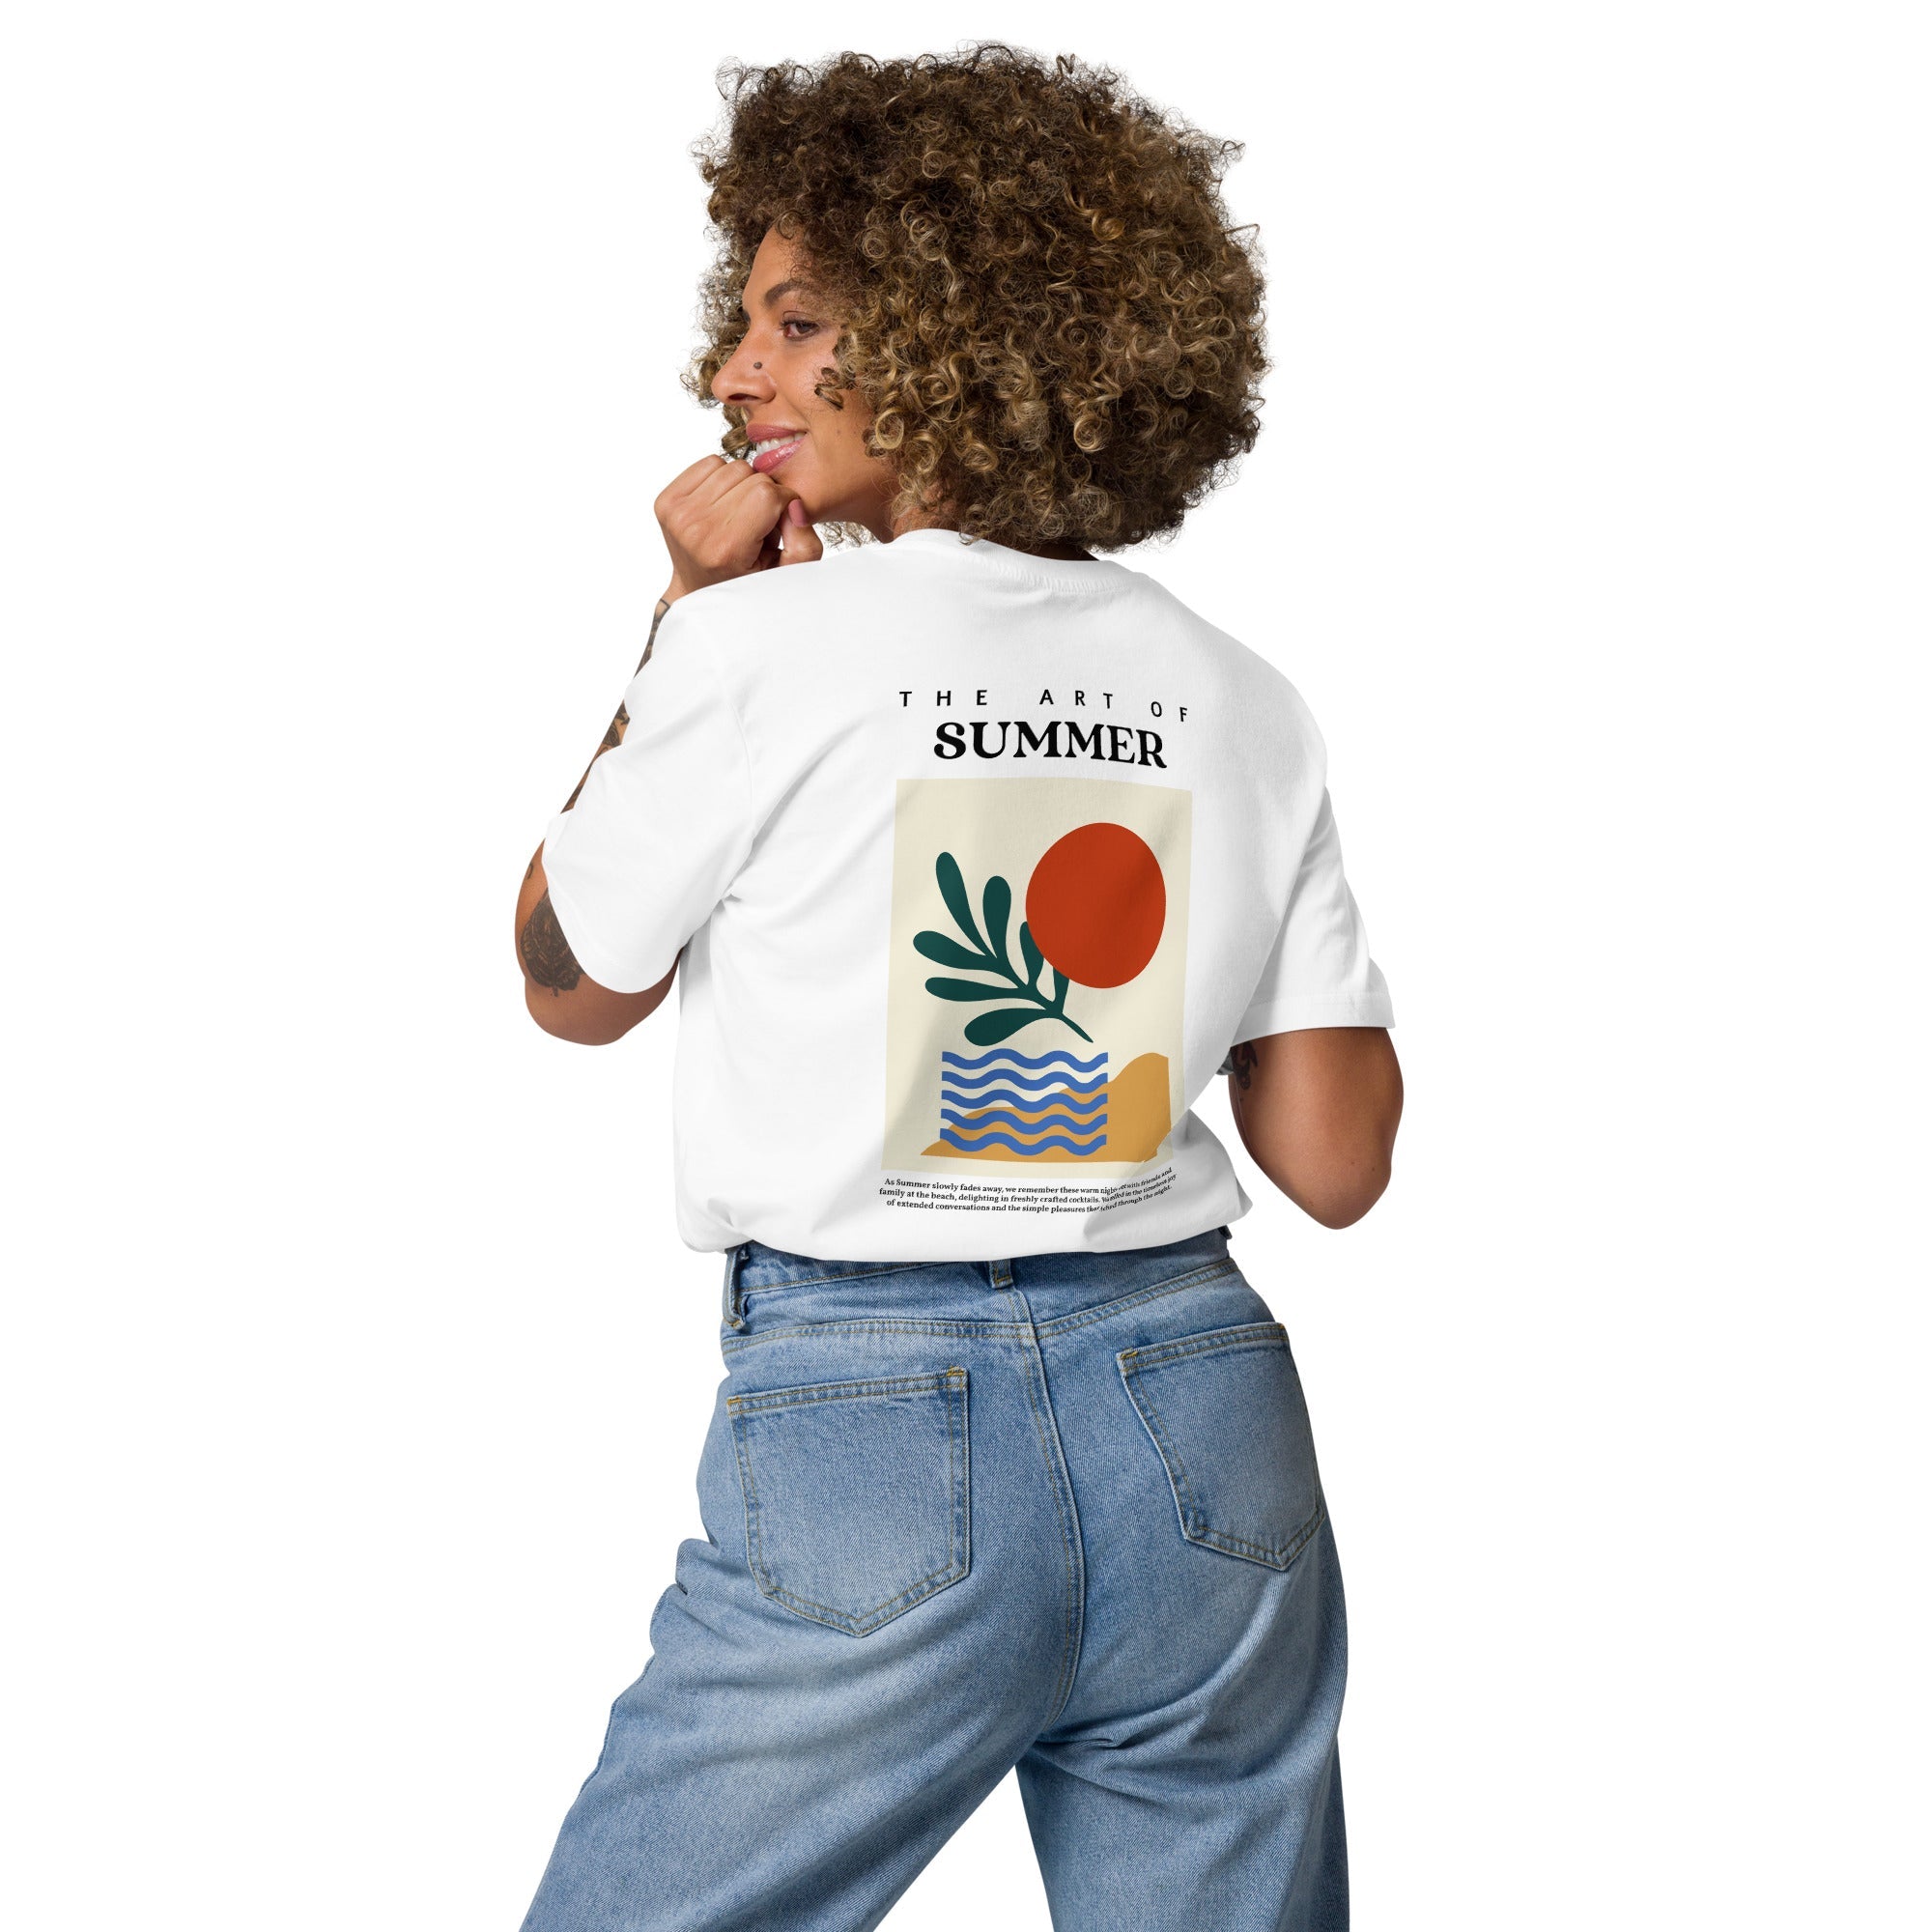 The Art of Summer - Organic T-shirt - The Refined Spirit